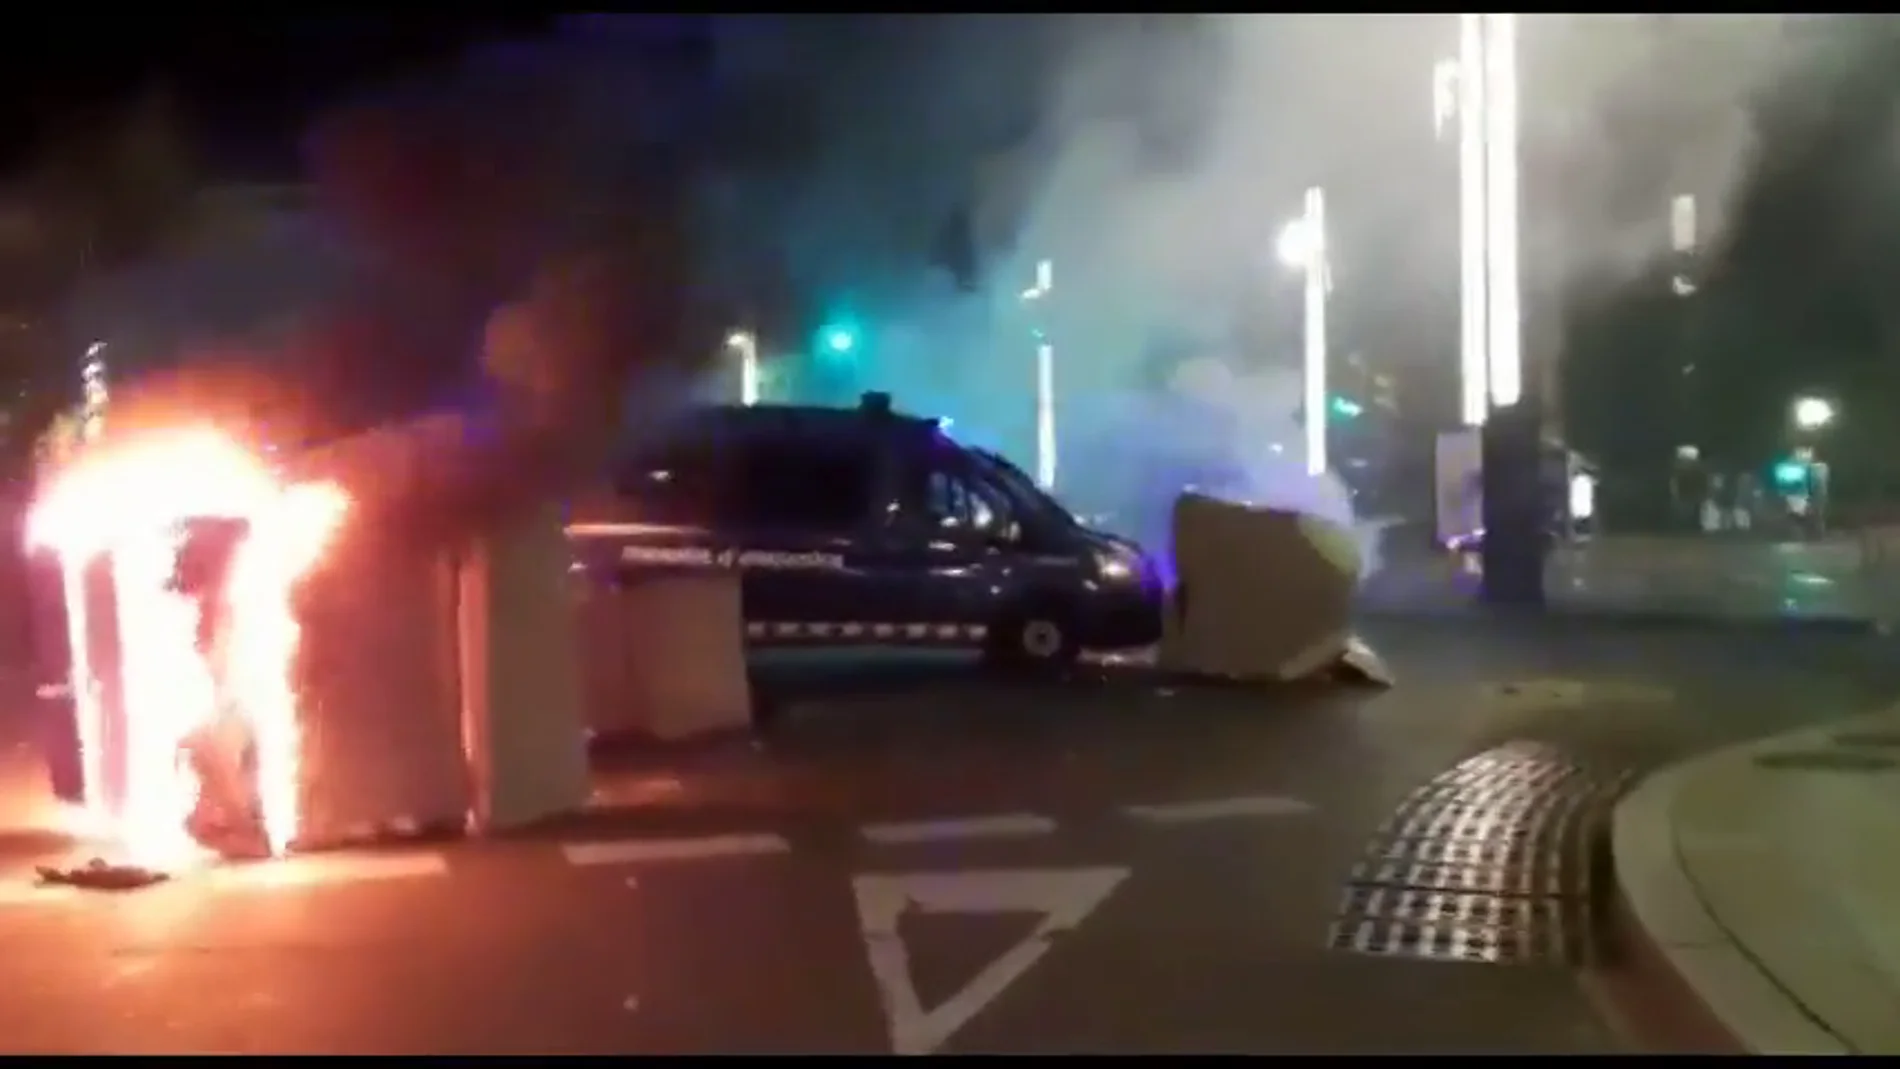 Arden motos y contenedores a modo de barricadas en las protestas de Barcelona tras la sentencia del procés